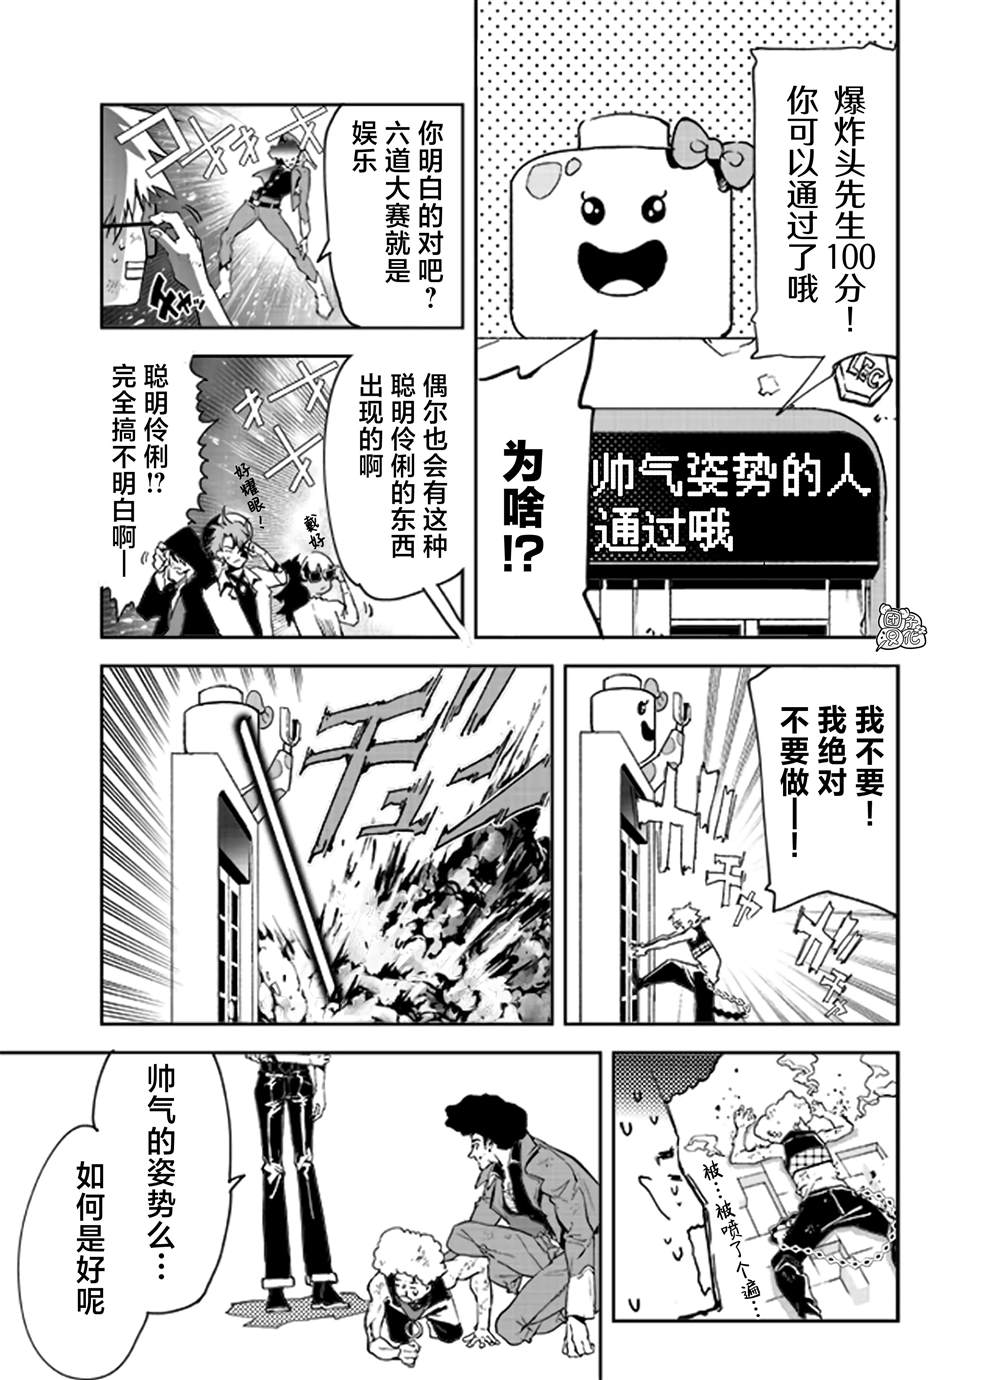 六道斗争纪漫画,第20话5图